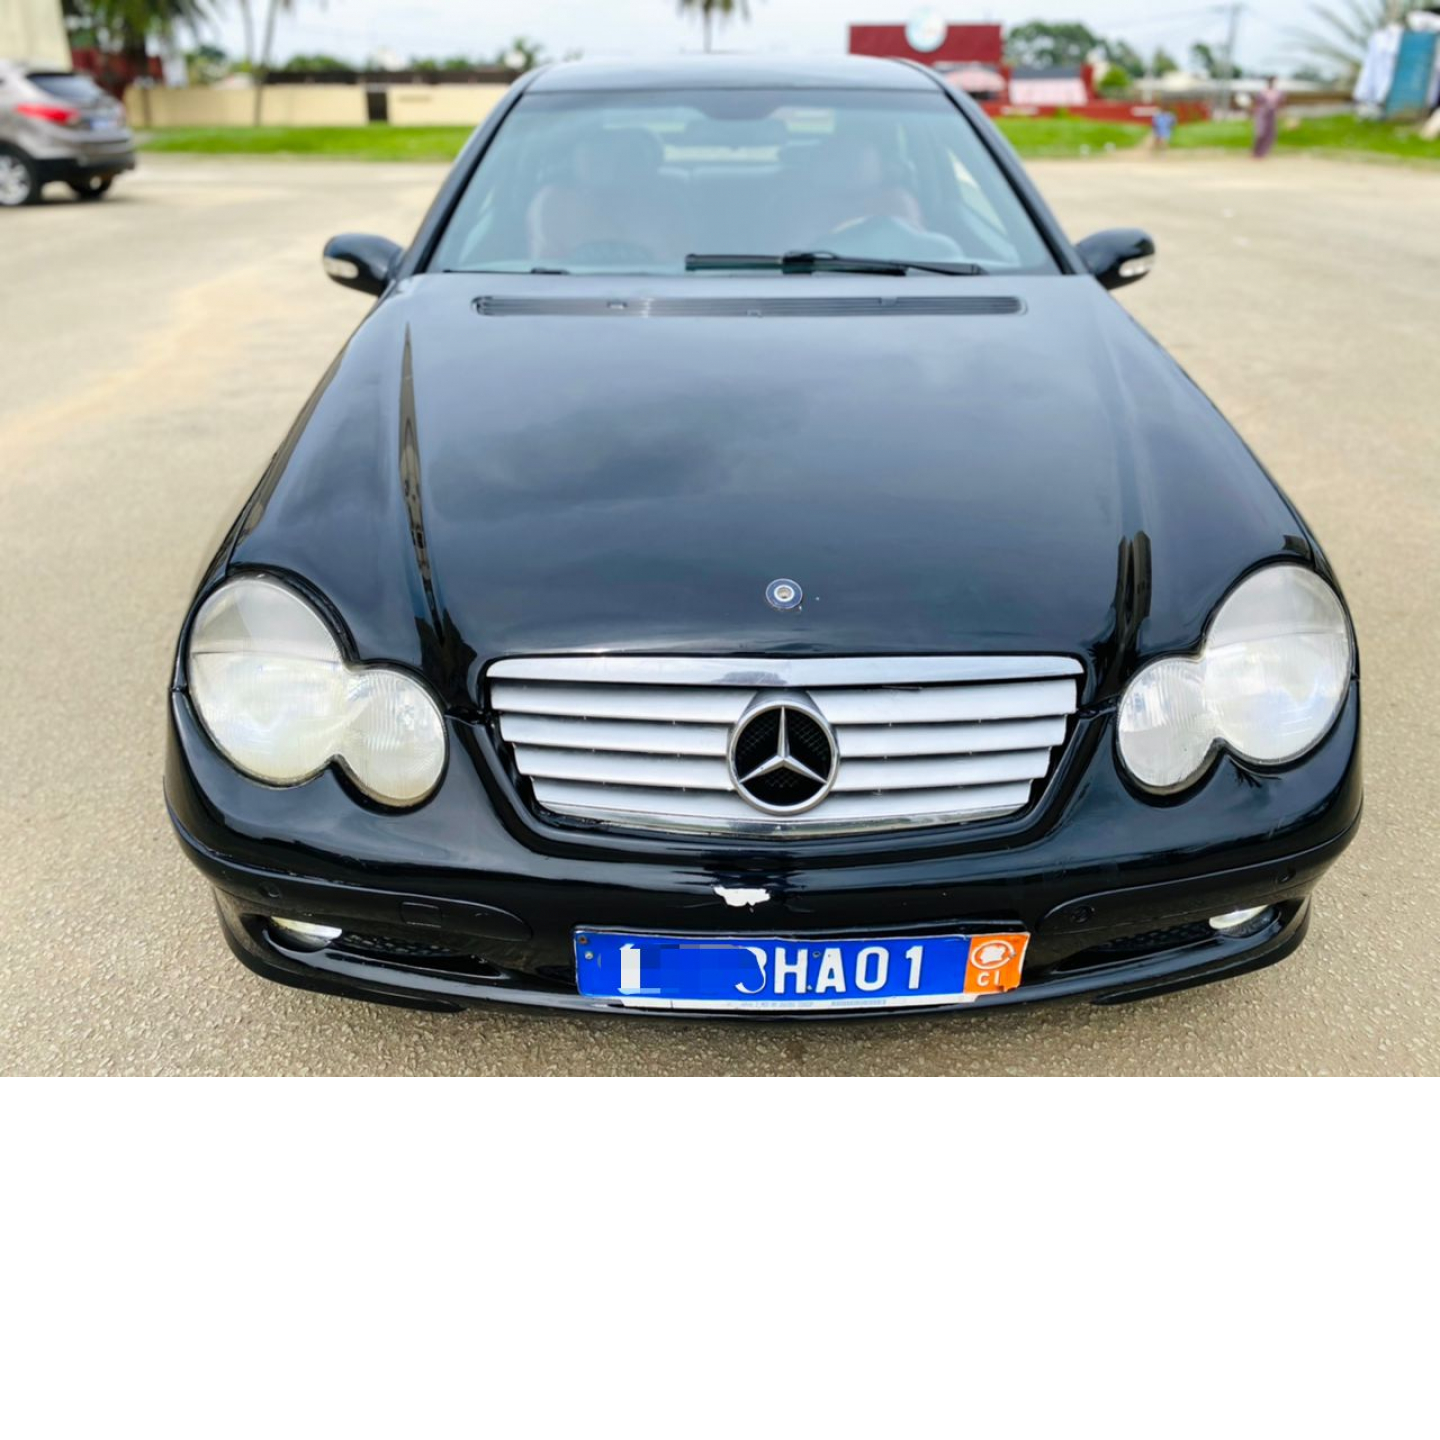 Mercedes c200